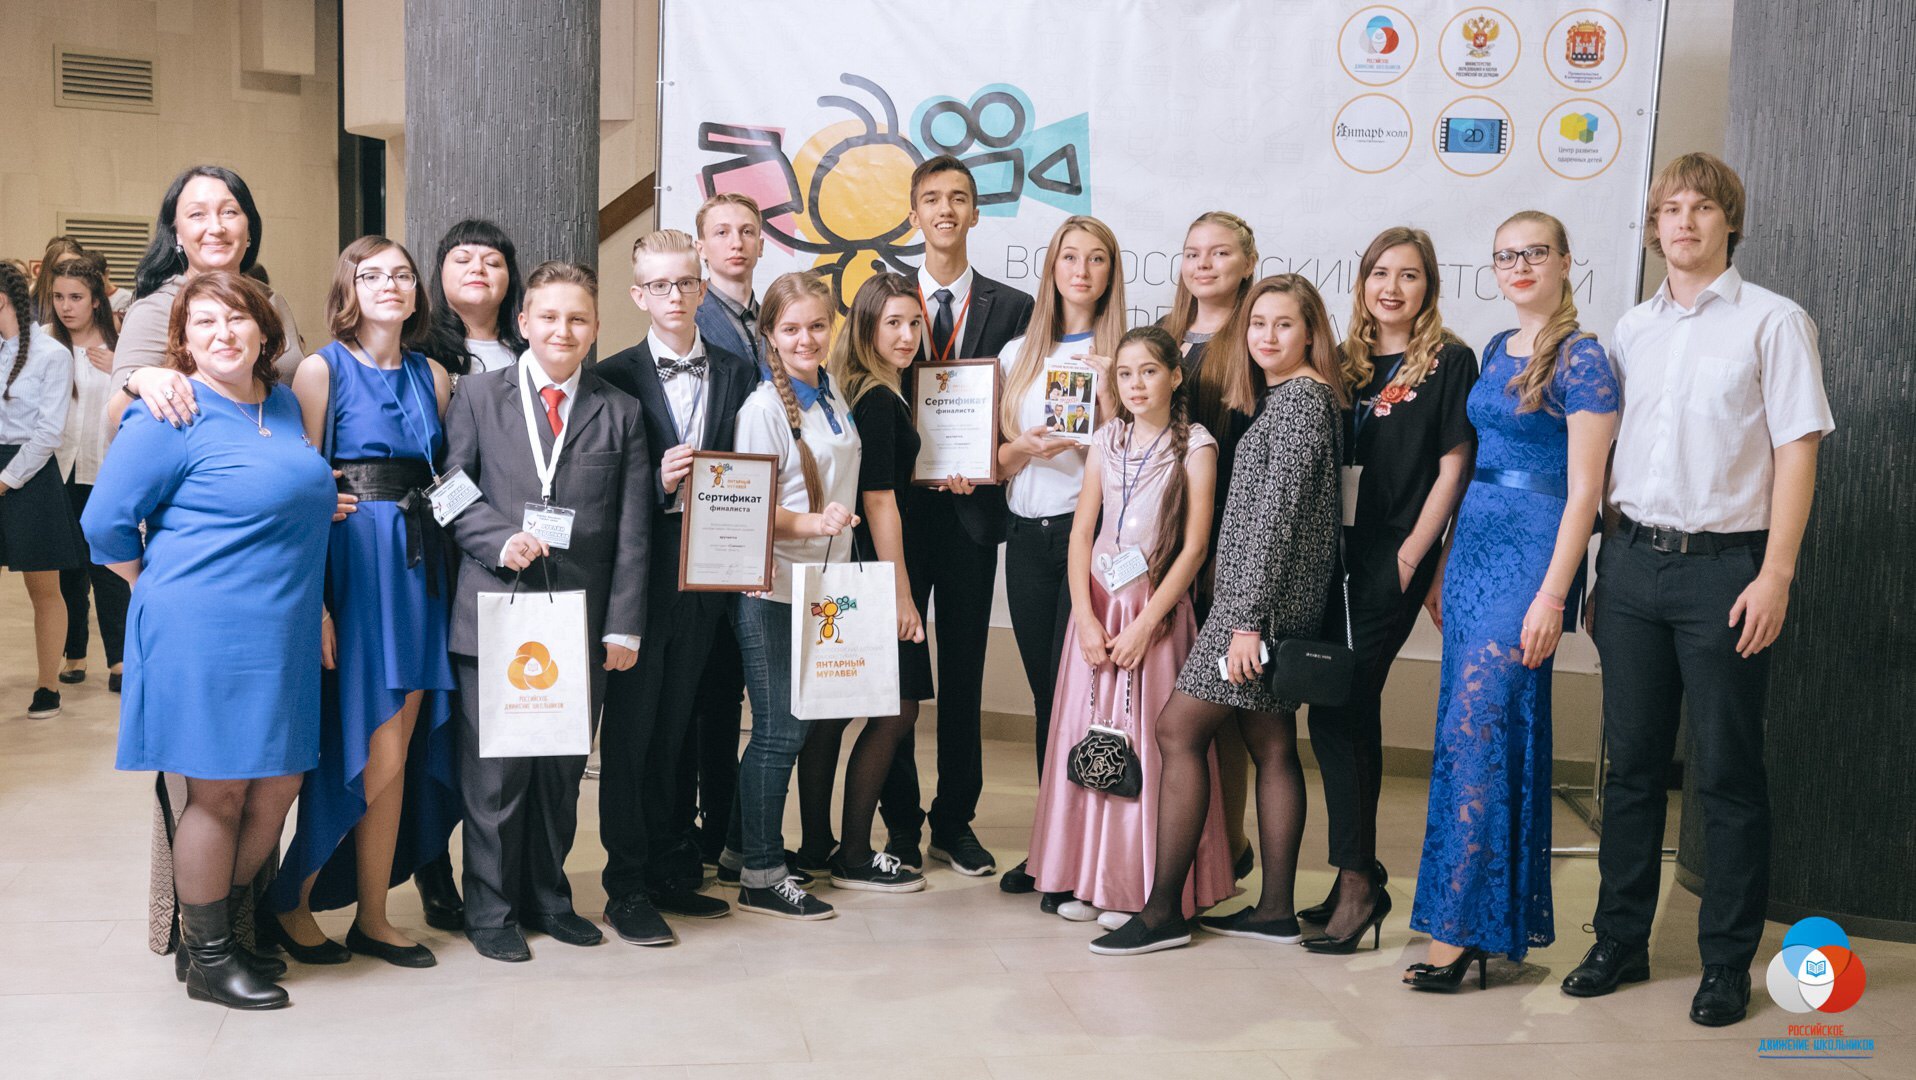 Кемеровская область приняла участие в первом Всероссийском детском кинофестивале «Янтарный муравей», который проходил с 30 октября по 4 ноября 2017 года в Калининградской области, г. Светлогорск